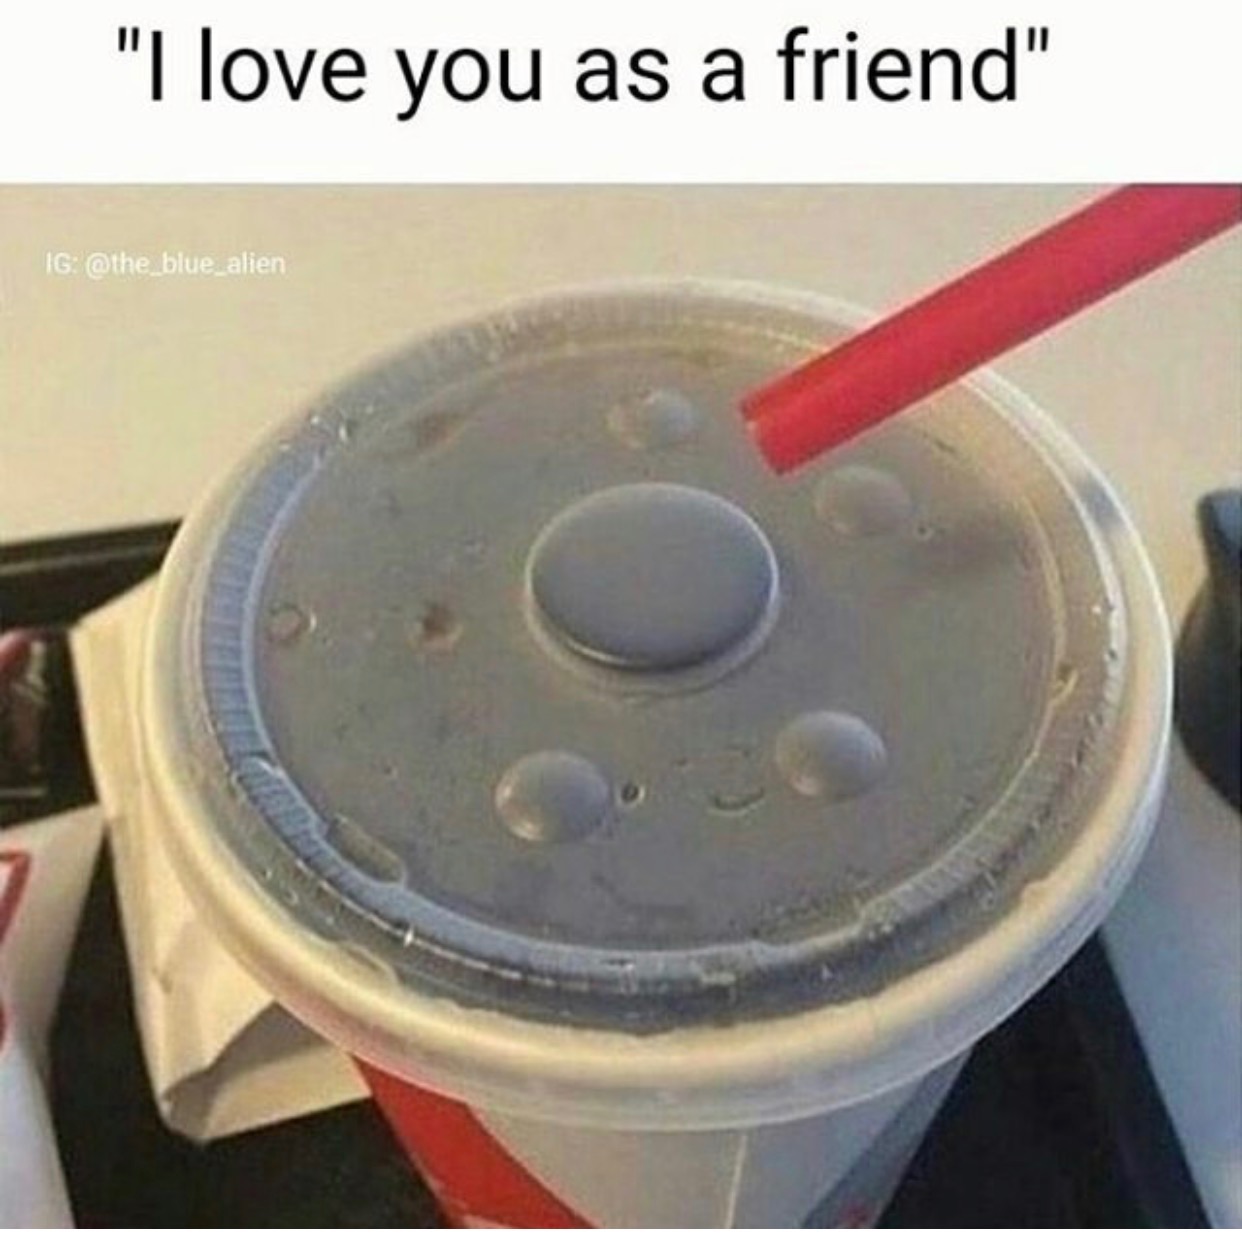 she says i love you - "I love you as a friend" Ig